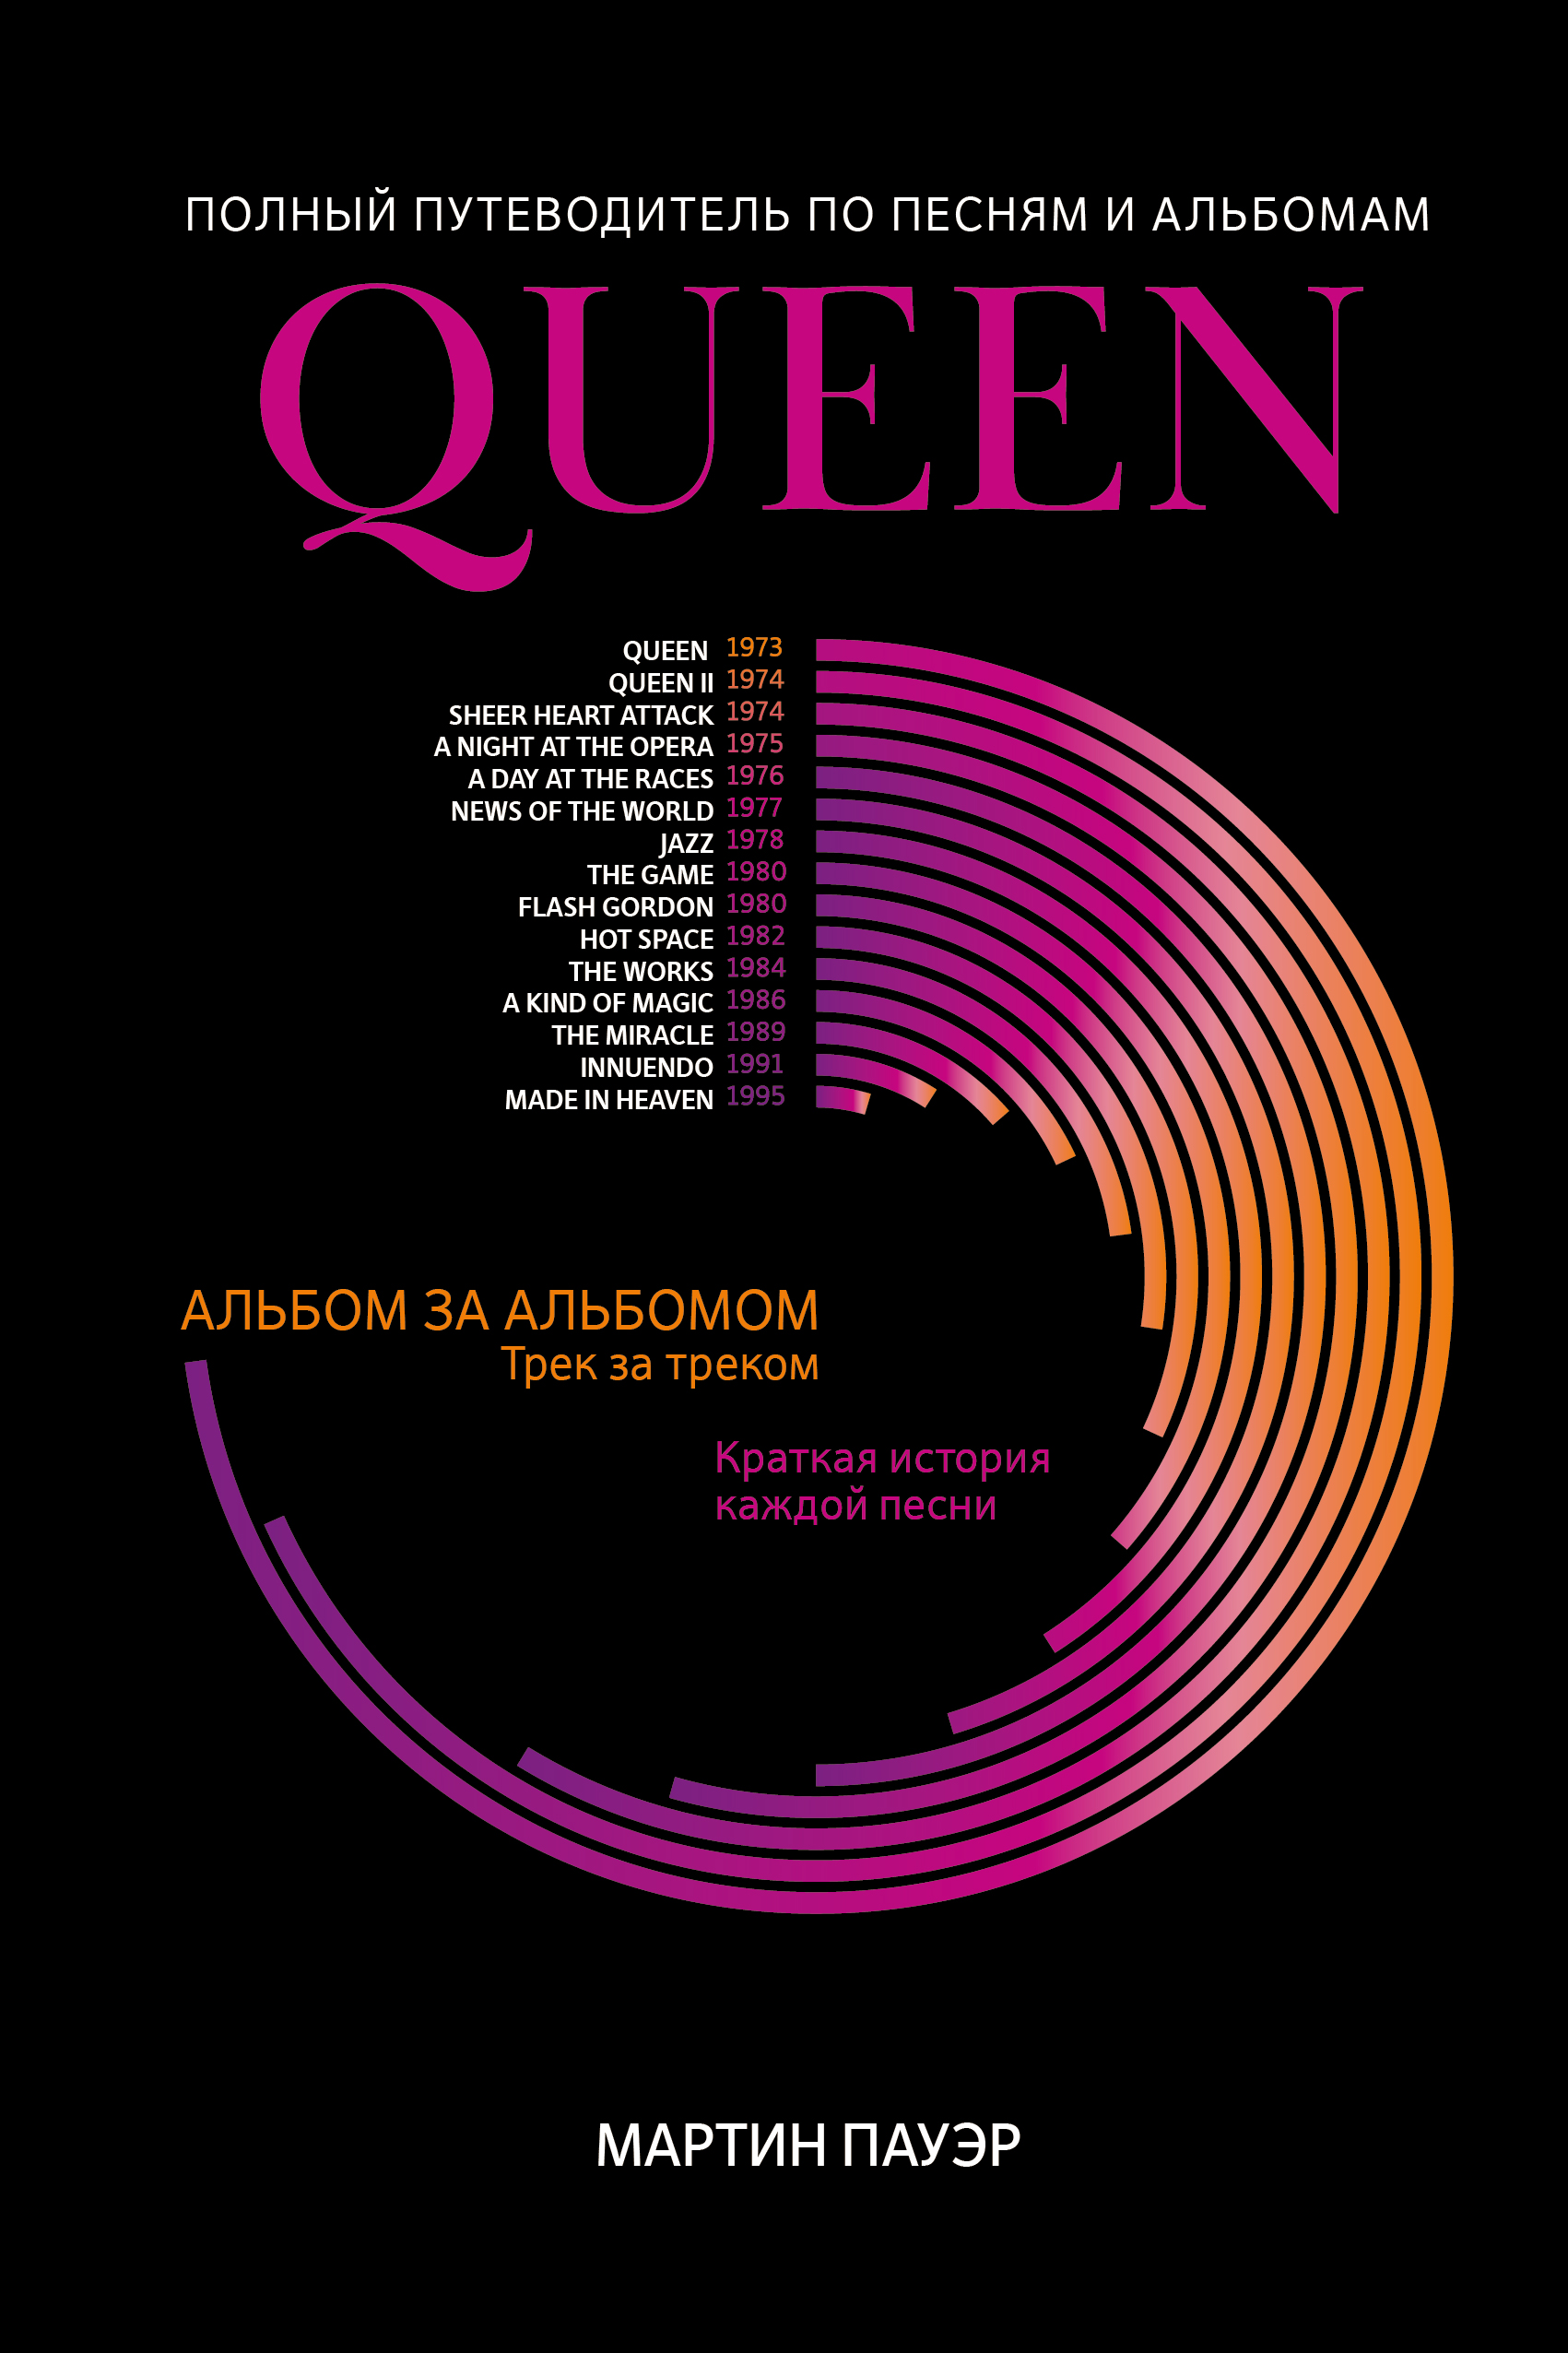 Пауэр Мартин - Queen: полный путеводитель по песням и альбомам